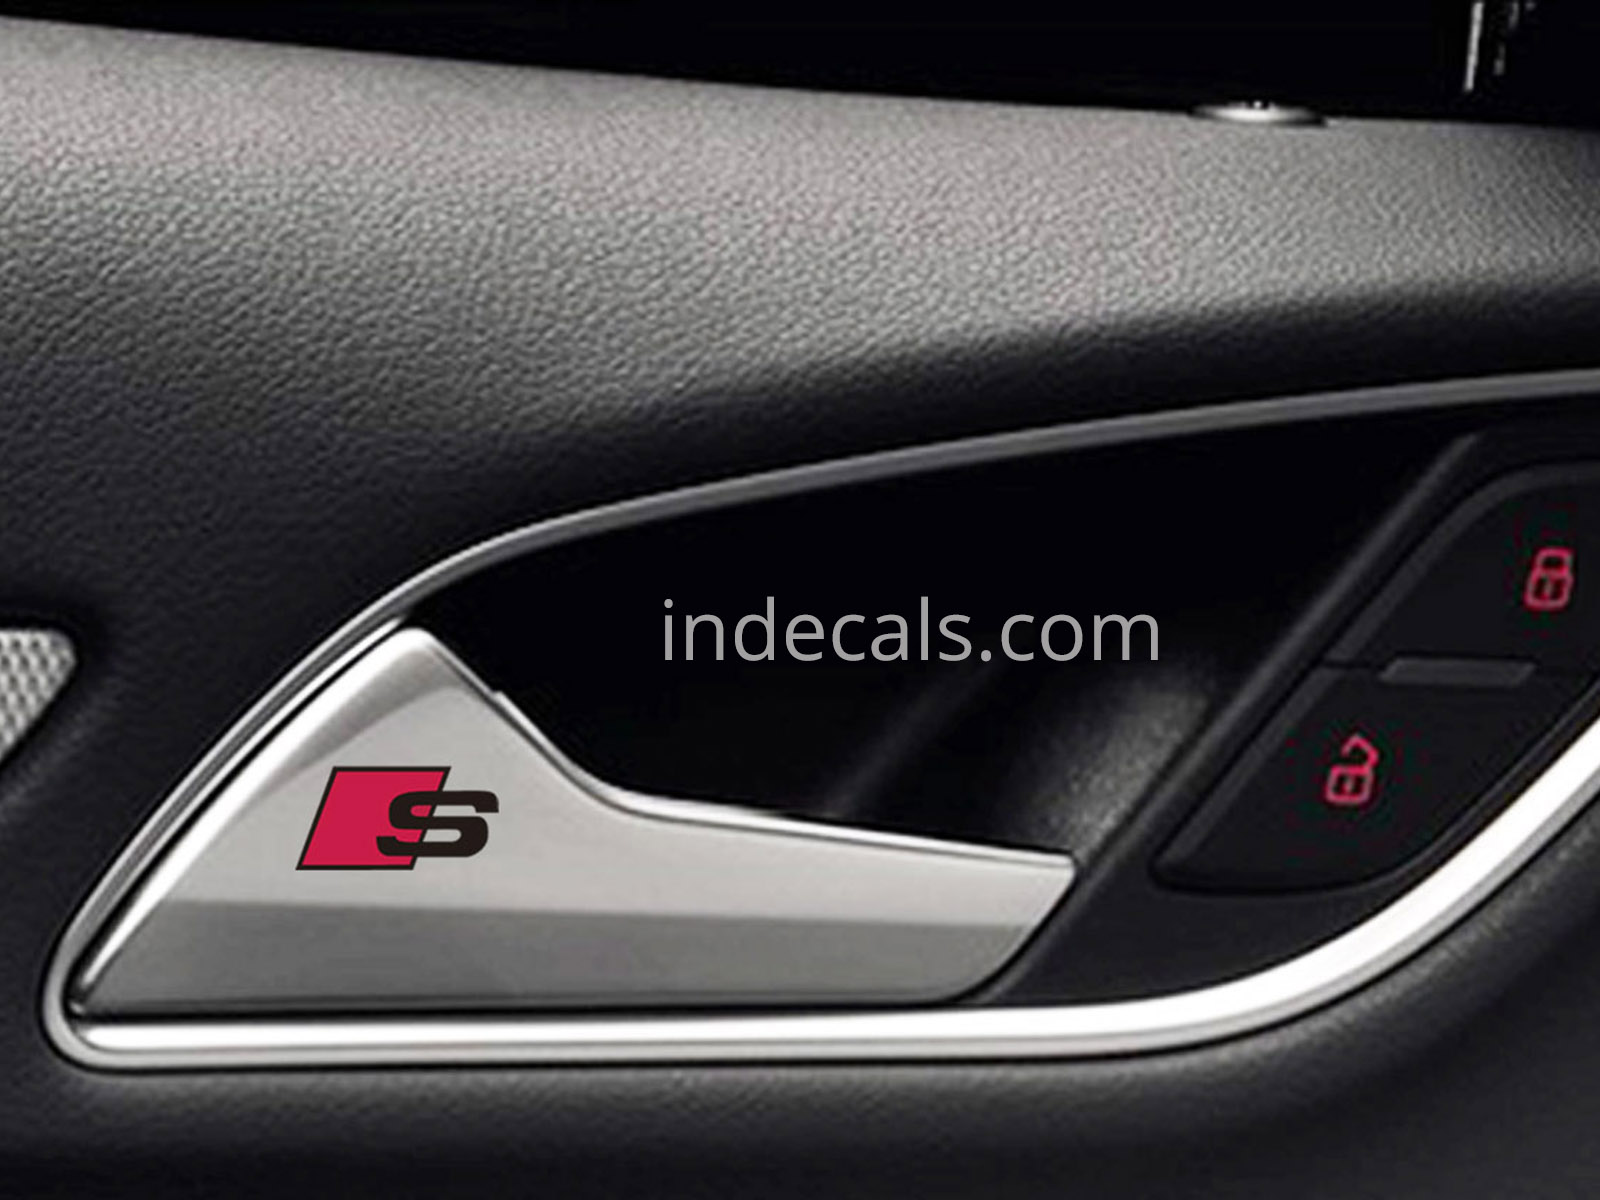 2 x Audi S-Line Stickers for Interior Door Handles - Black + Red